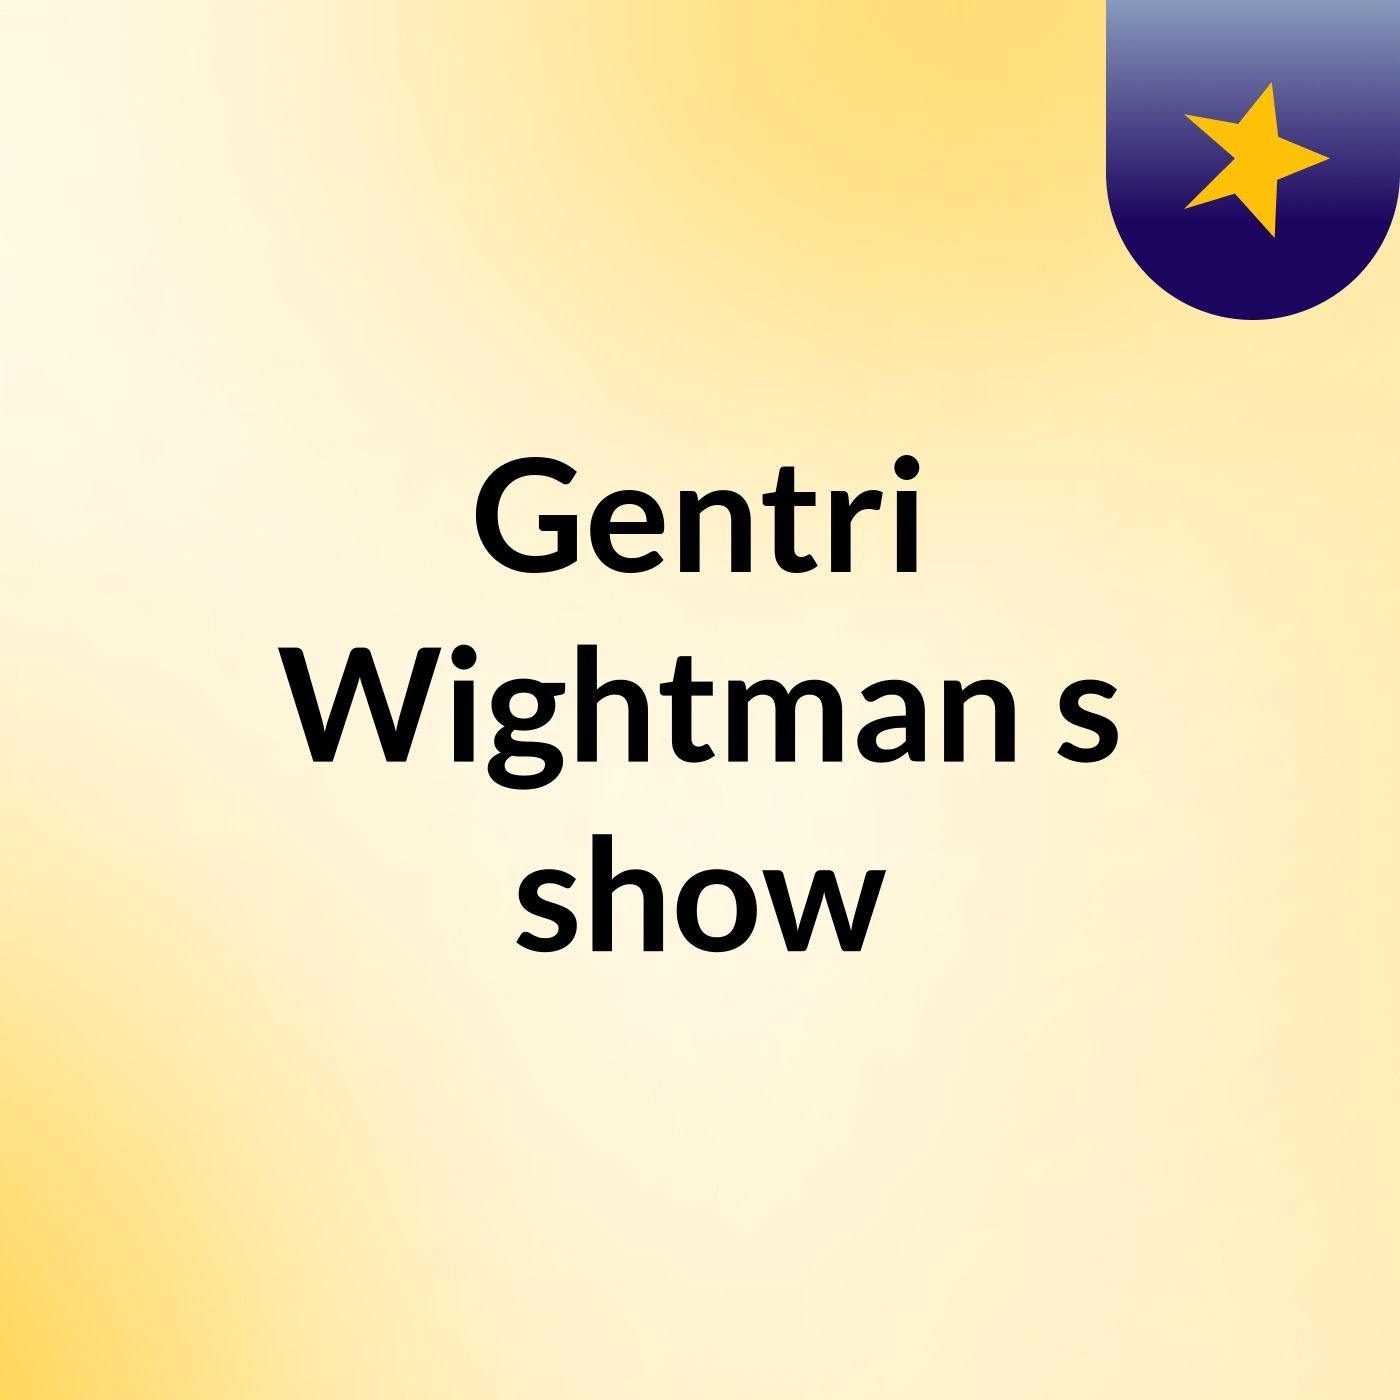 Gentri Wightman's show